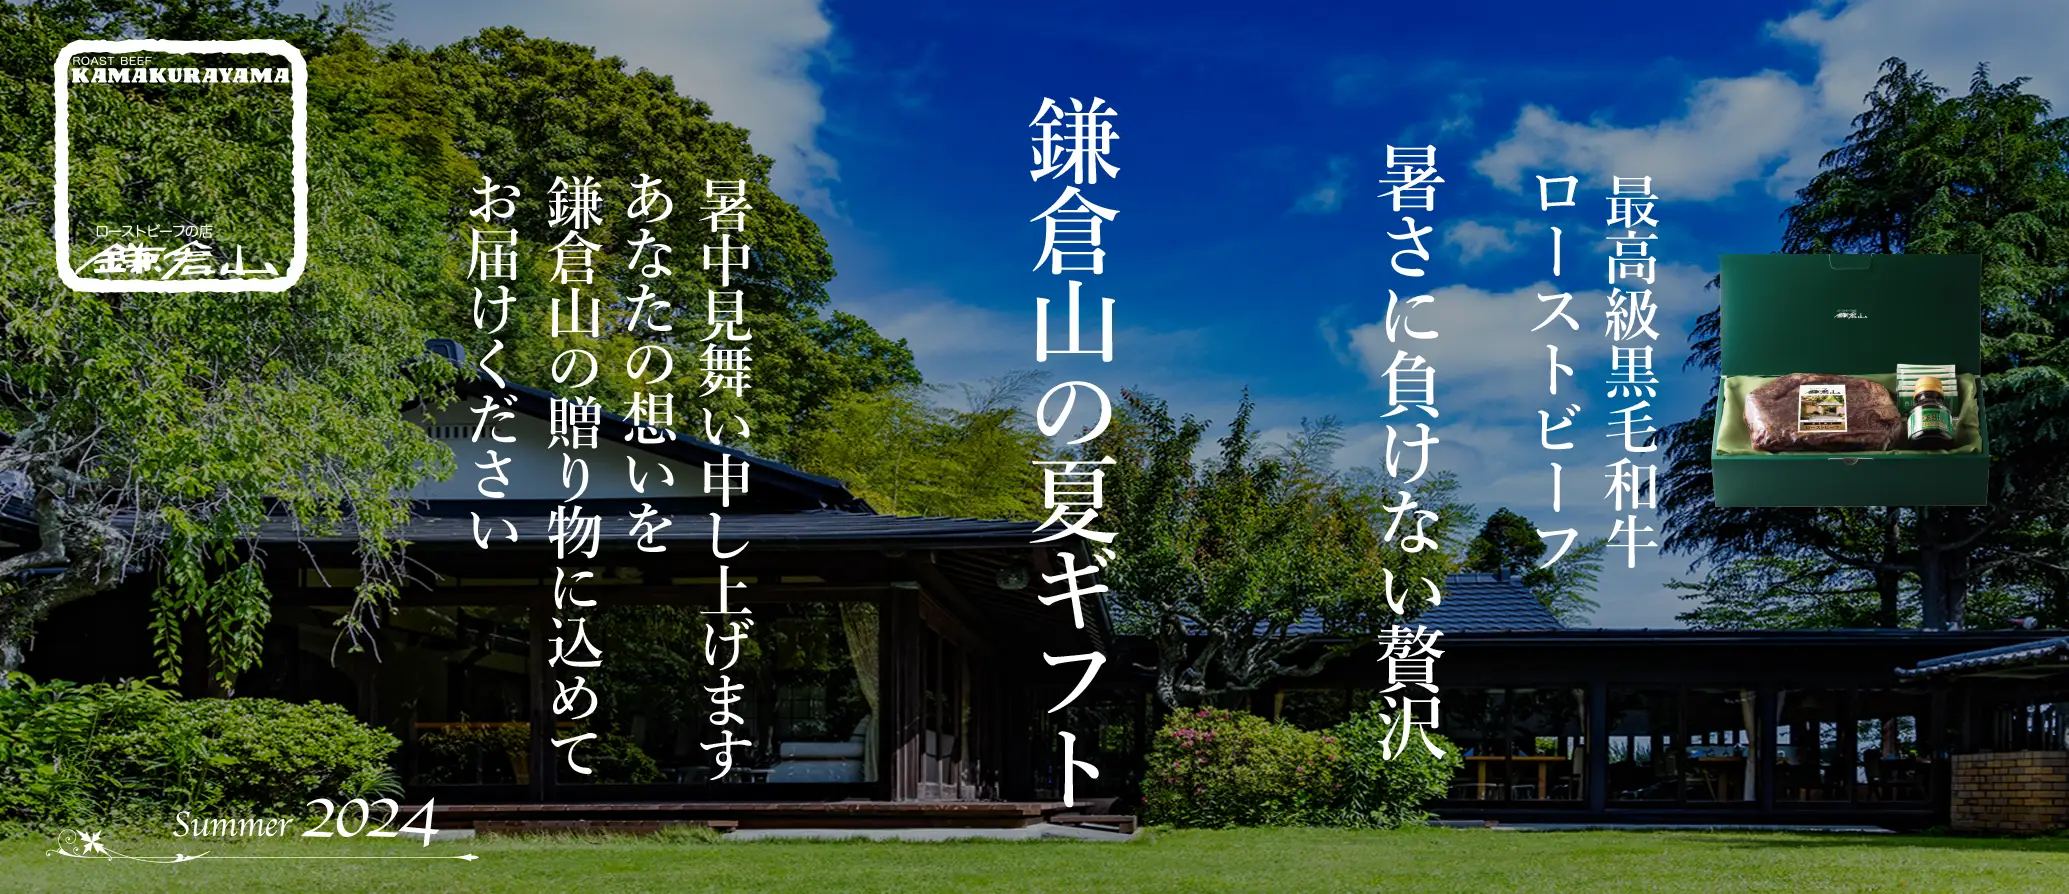 鎌倉山 暑中お見舞い 広告バナー画像